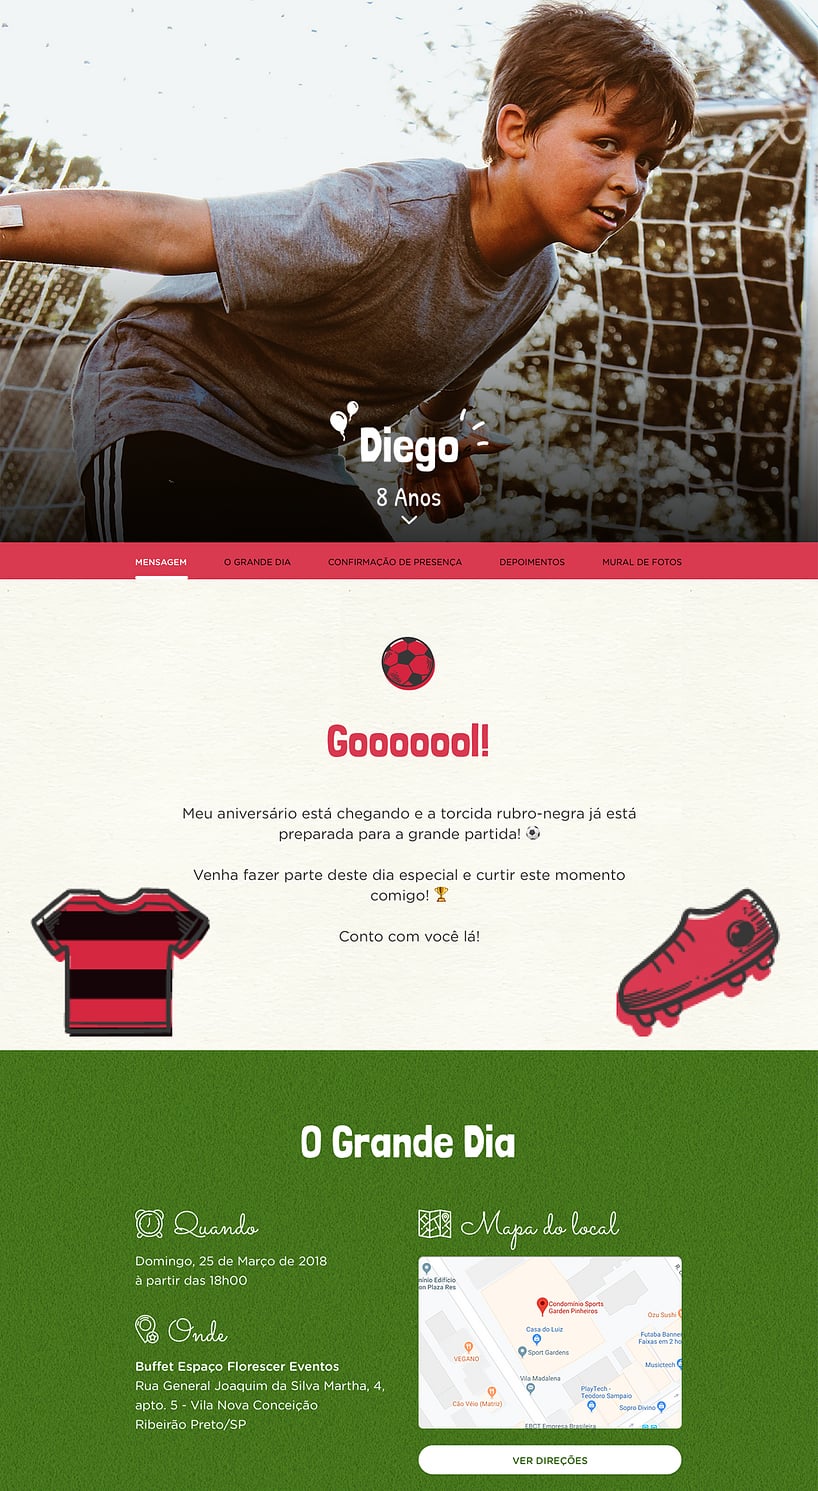 Vibe de Aniversario - Flamengo